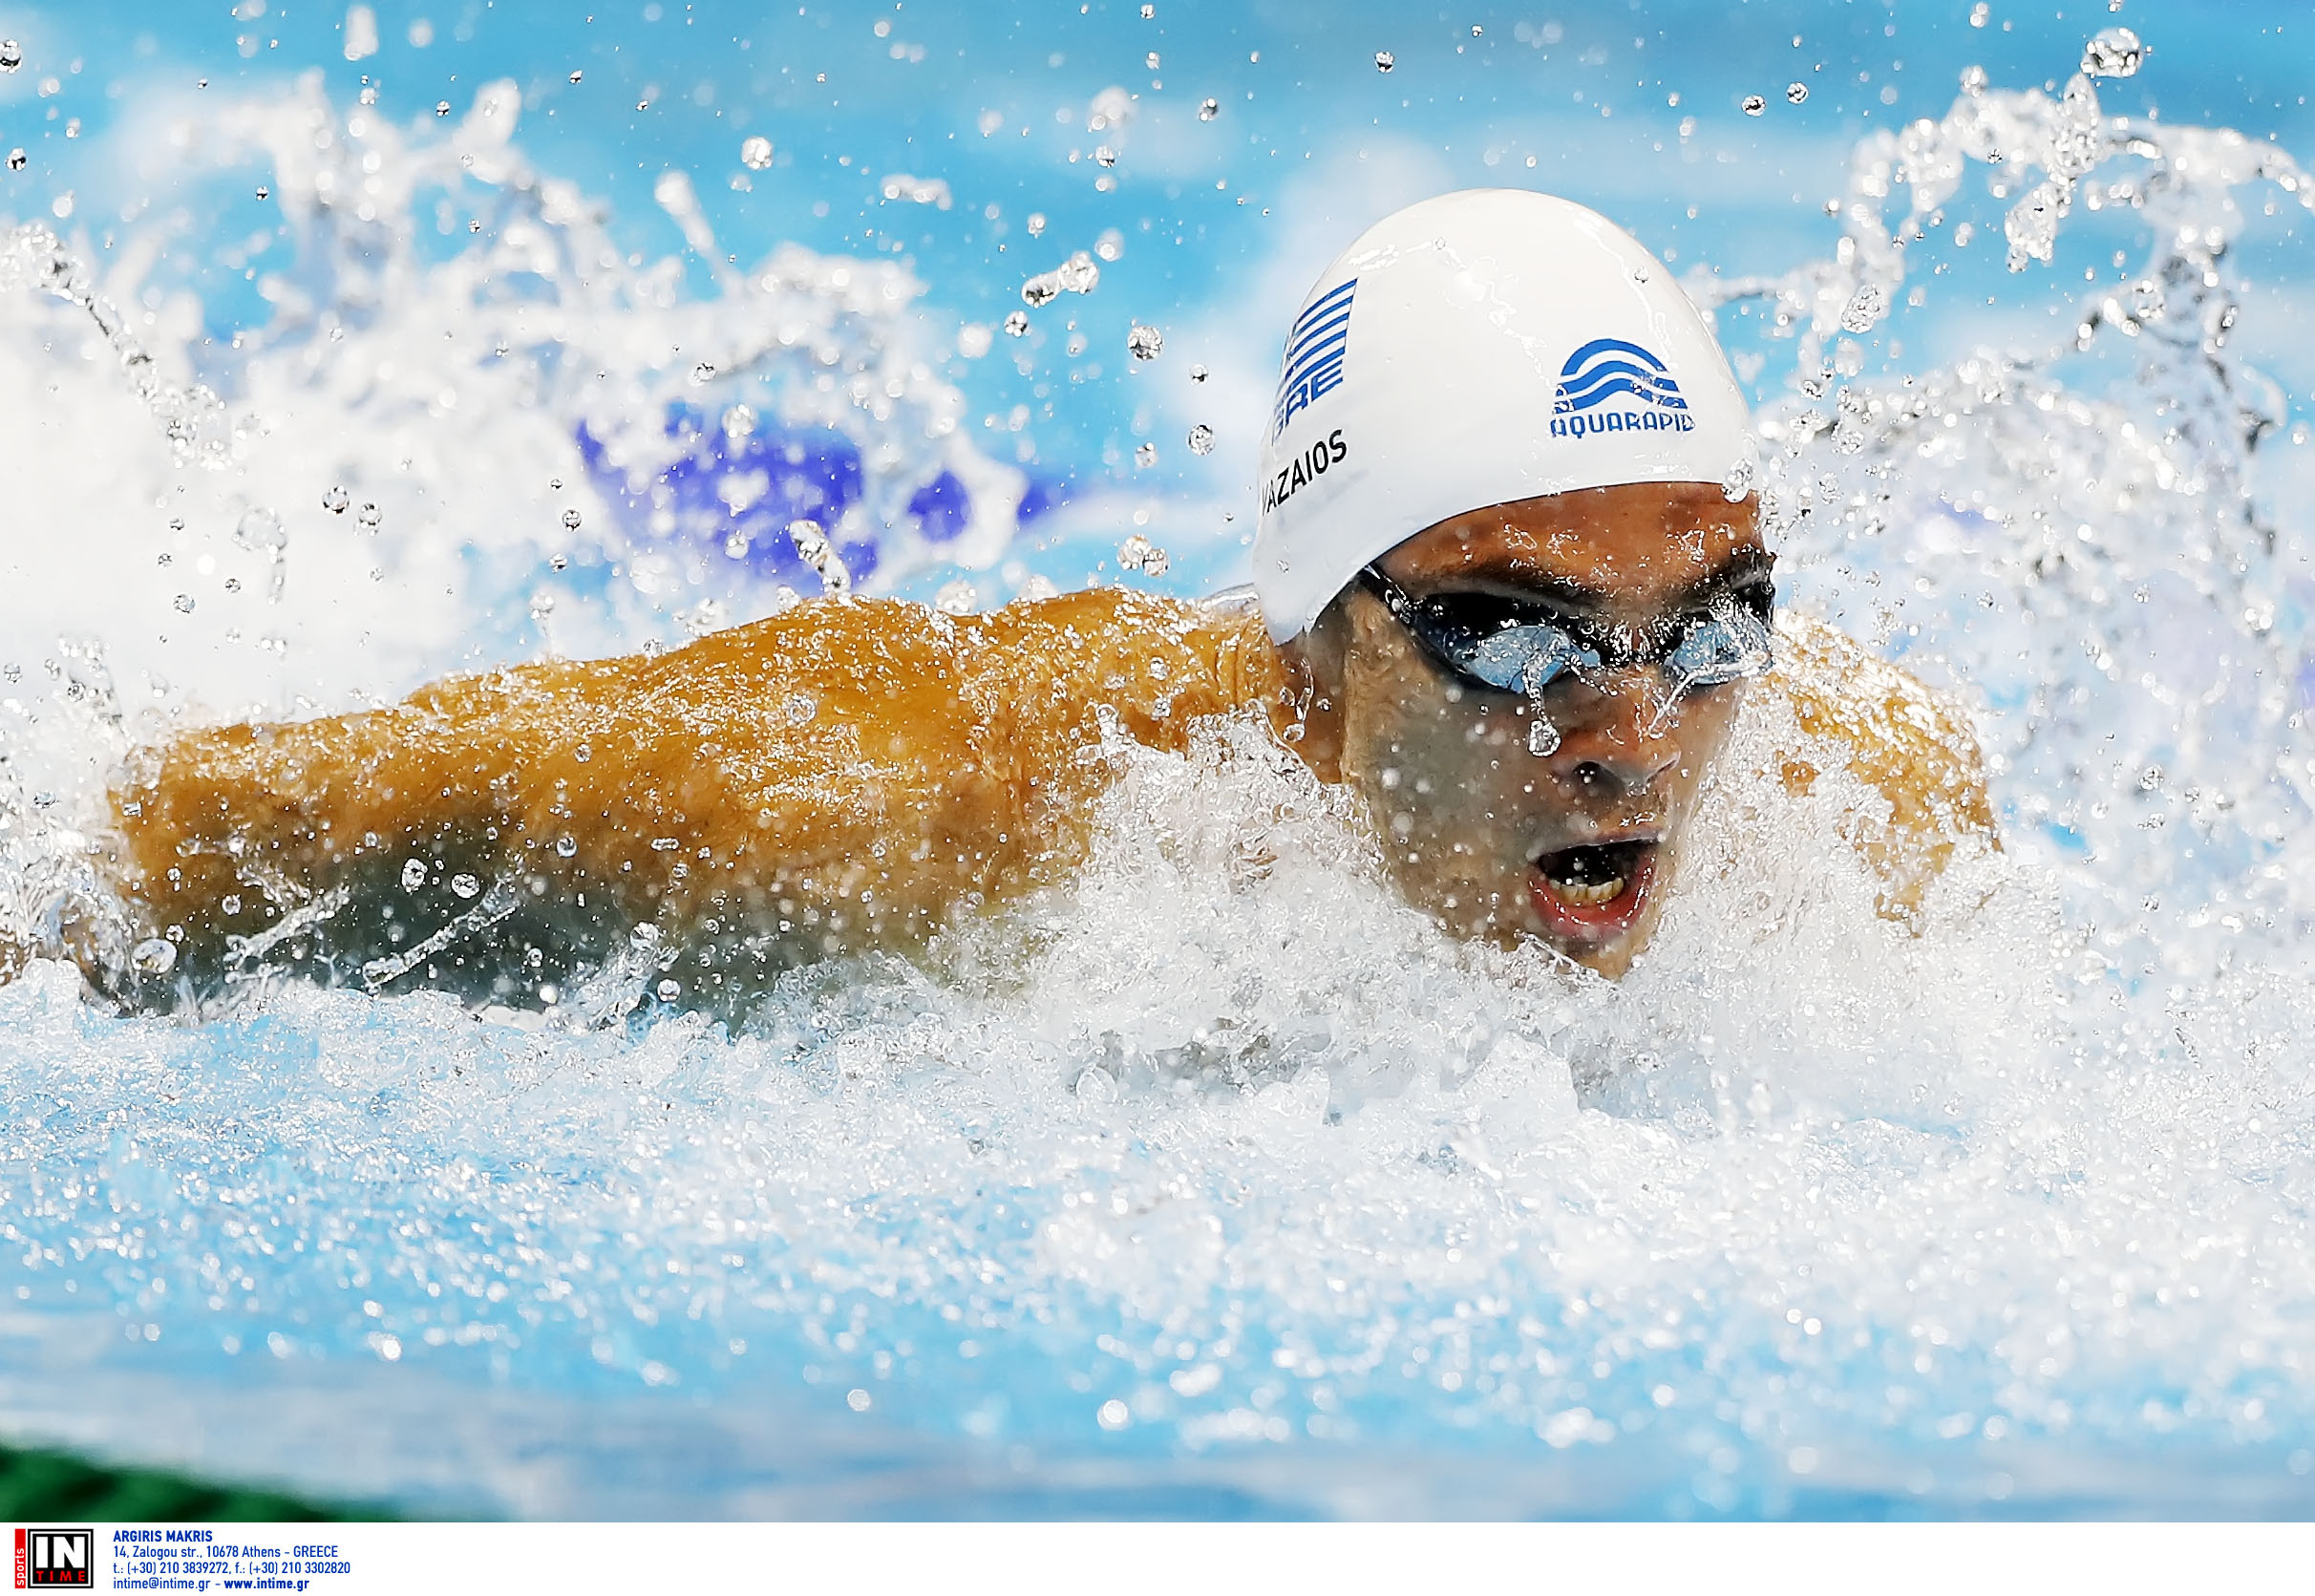 Μεσογειακοί αγώνες: Χρυσό μετάλλιο για τον Ανδρέα Βαζαίο στα 200 μέτρα μικτή κολύμβηση